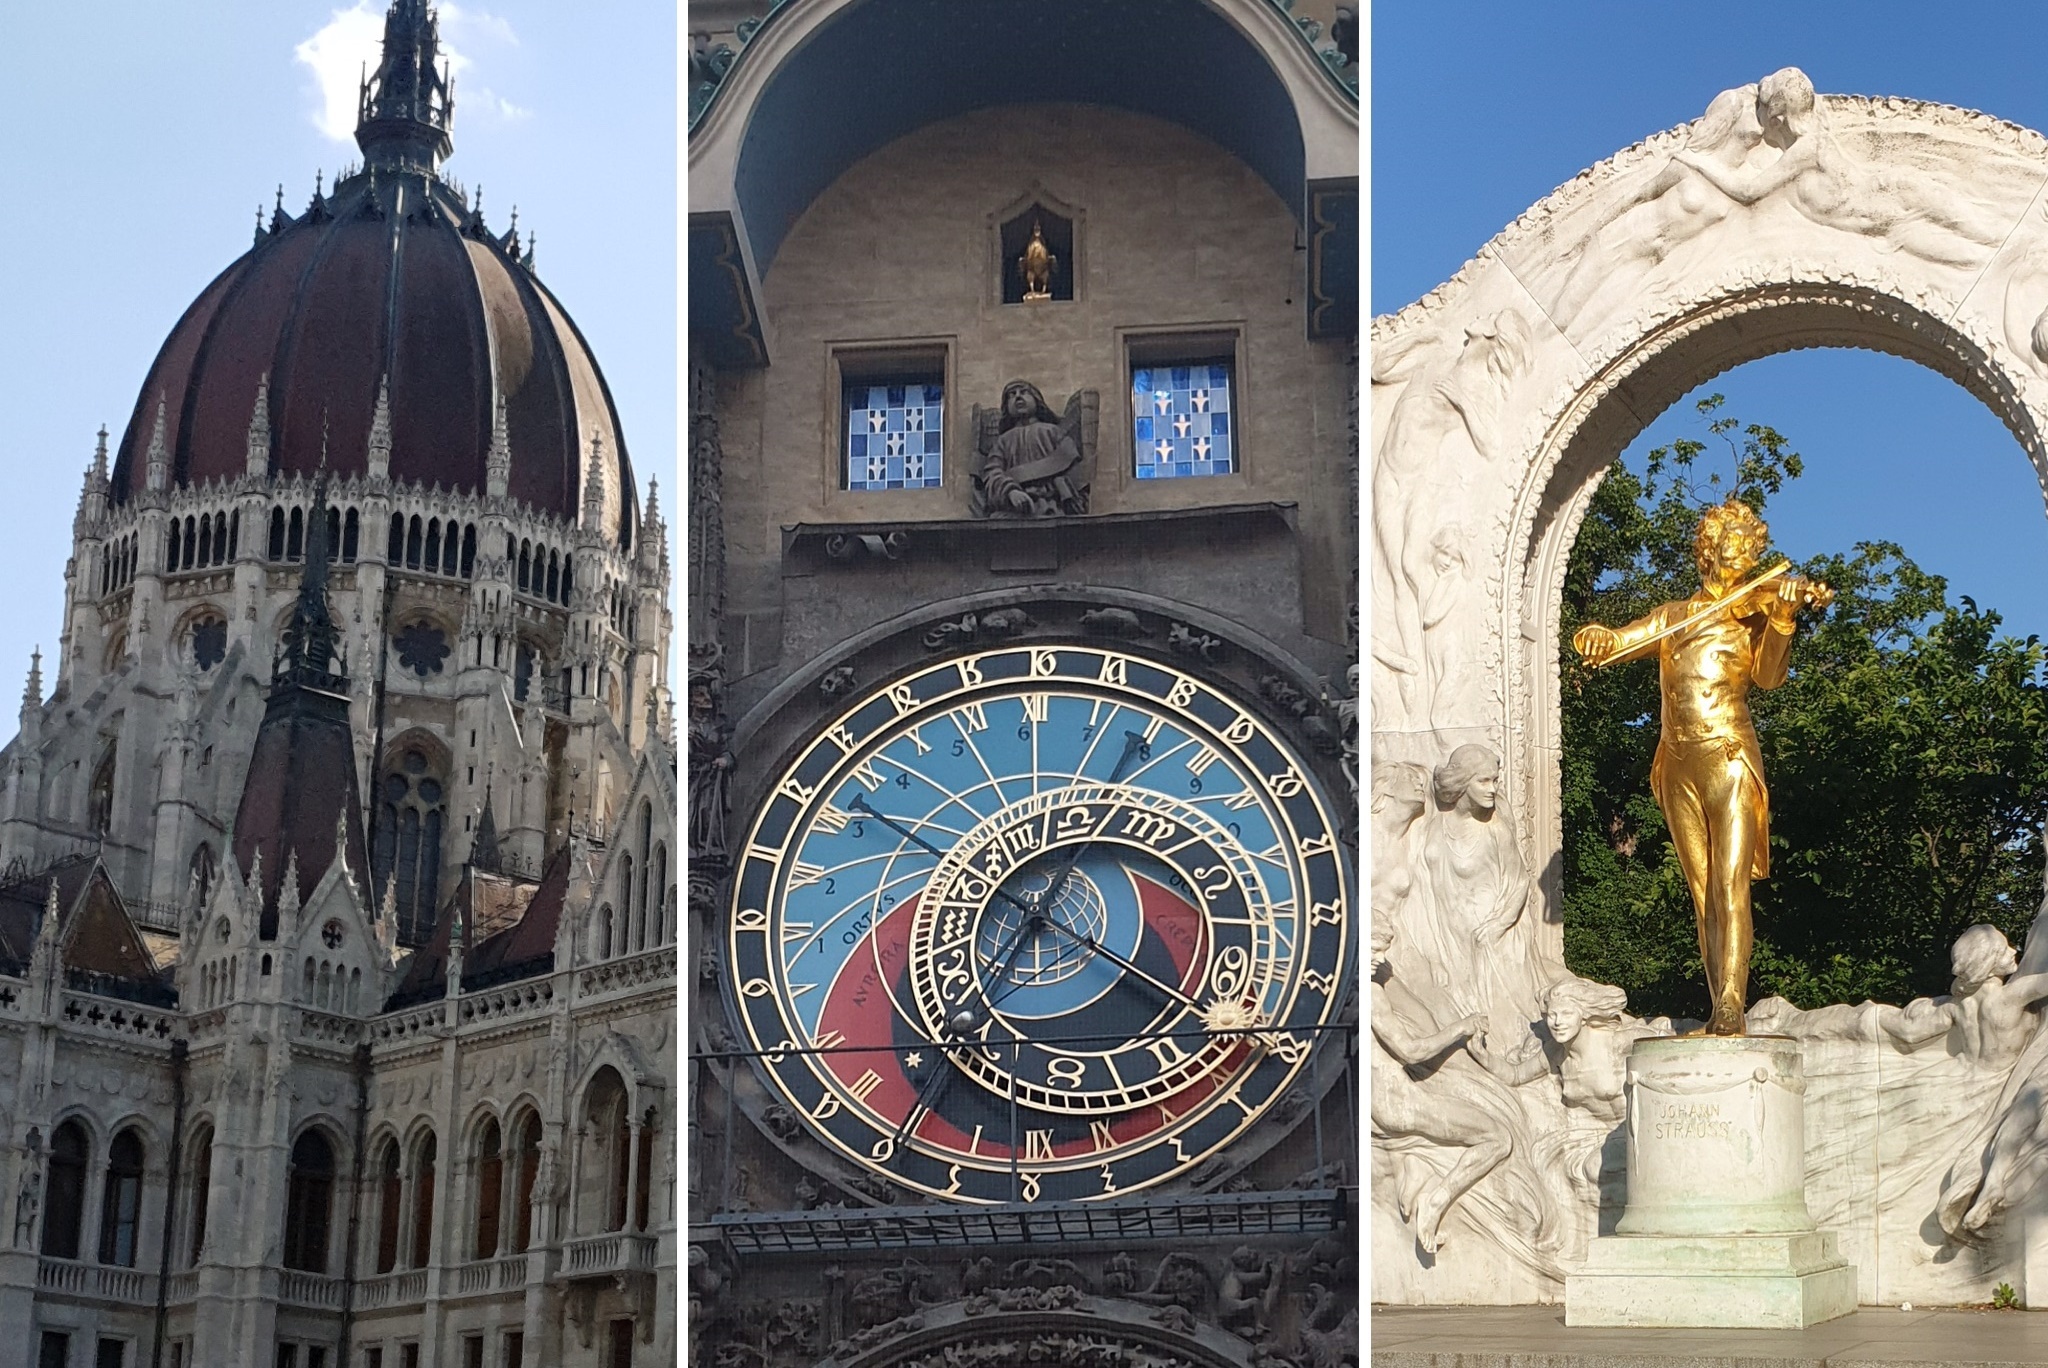 Los 3 monumentos mas importantes de Viena, Praga y Budapesta aparecen en esta imagen